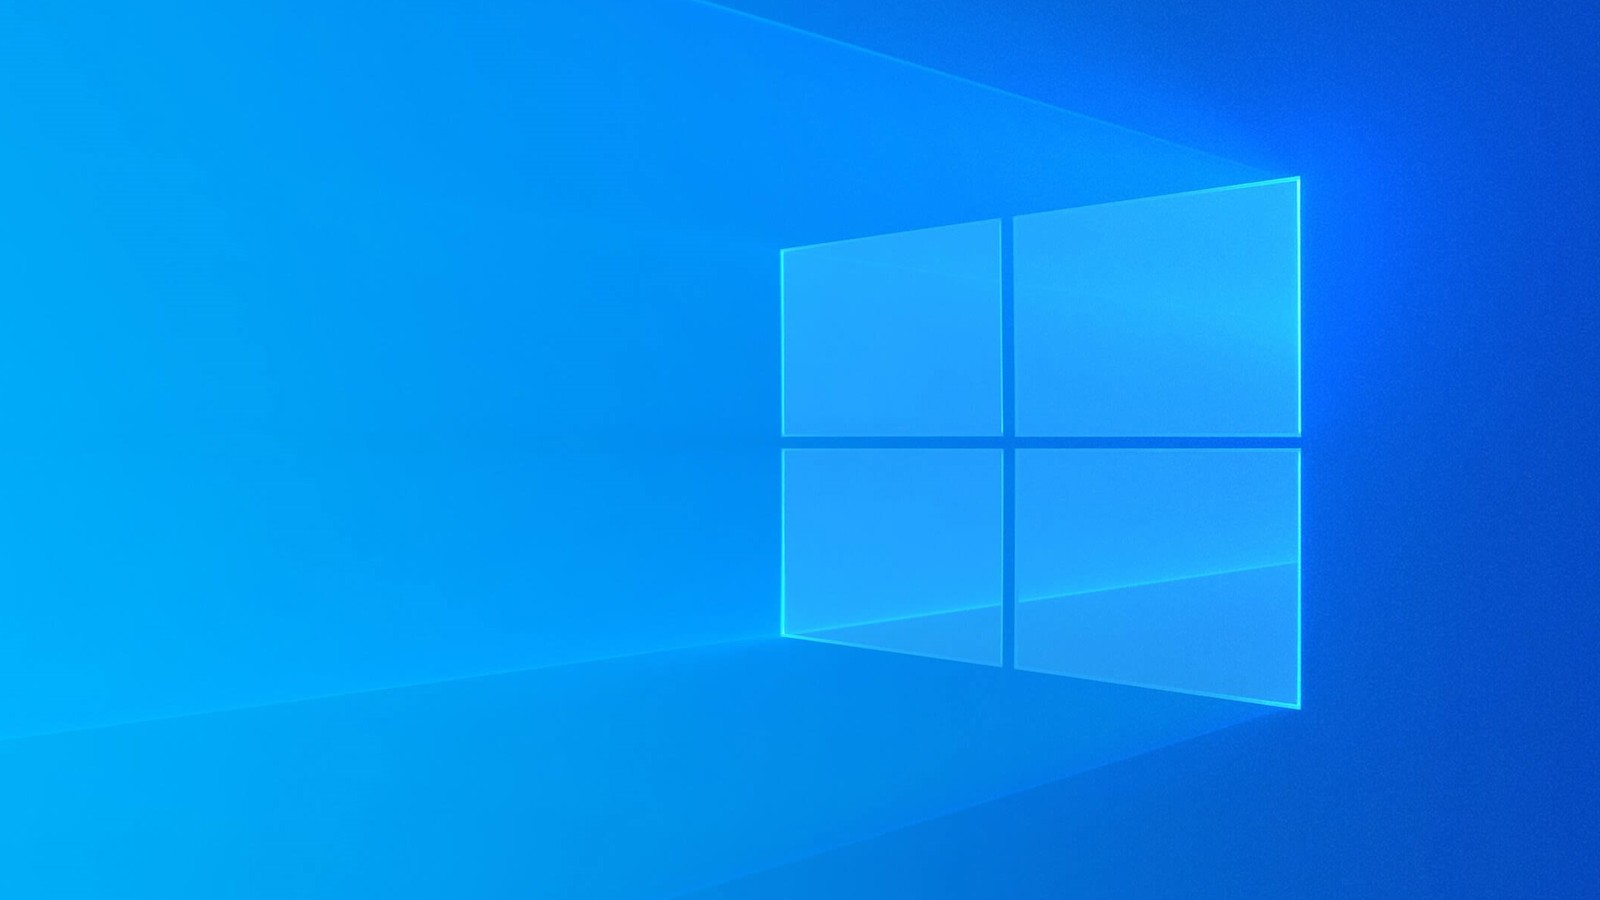 Cena originální doživotní licence Windows 10 výrazně klesla! 28% slevy, Windows 10 jen za 320 Kč [sponzorovaný článek]